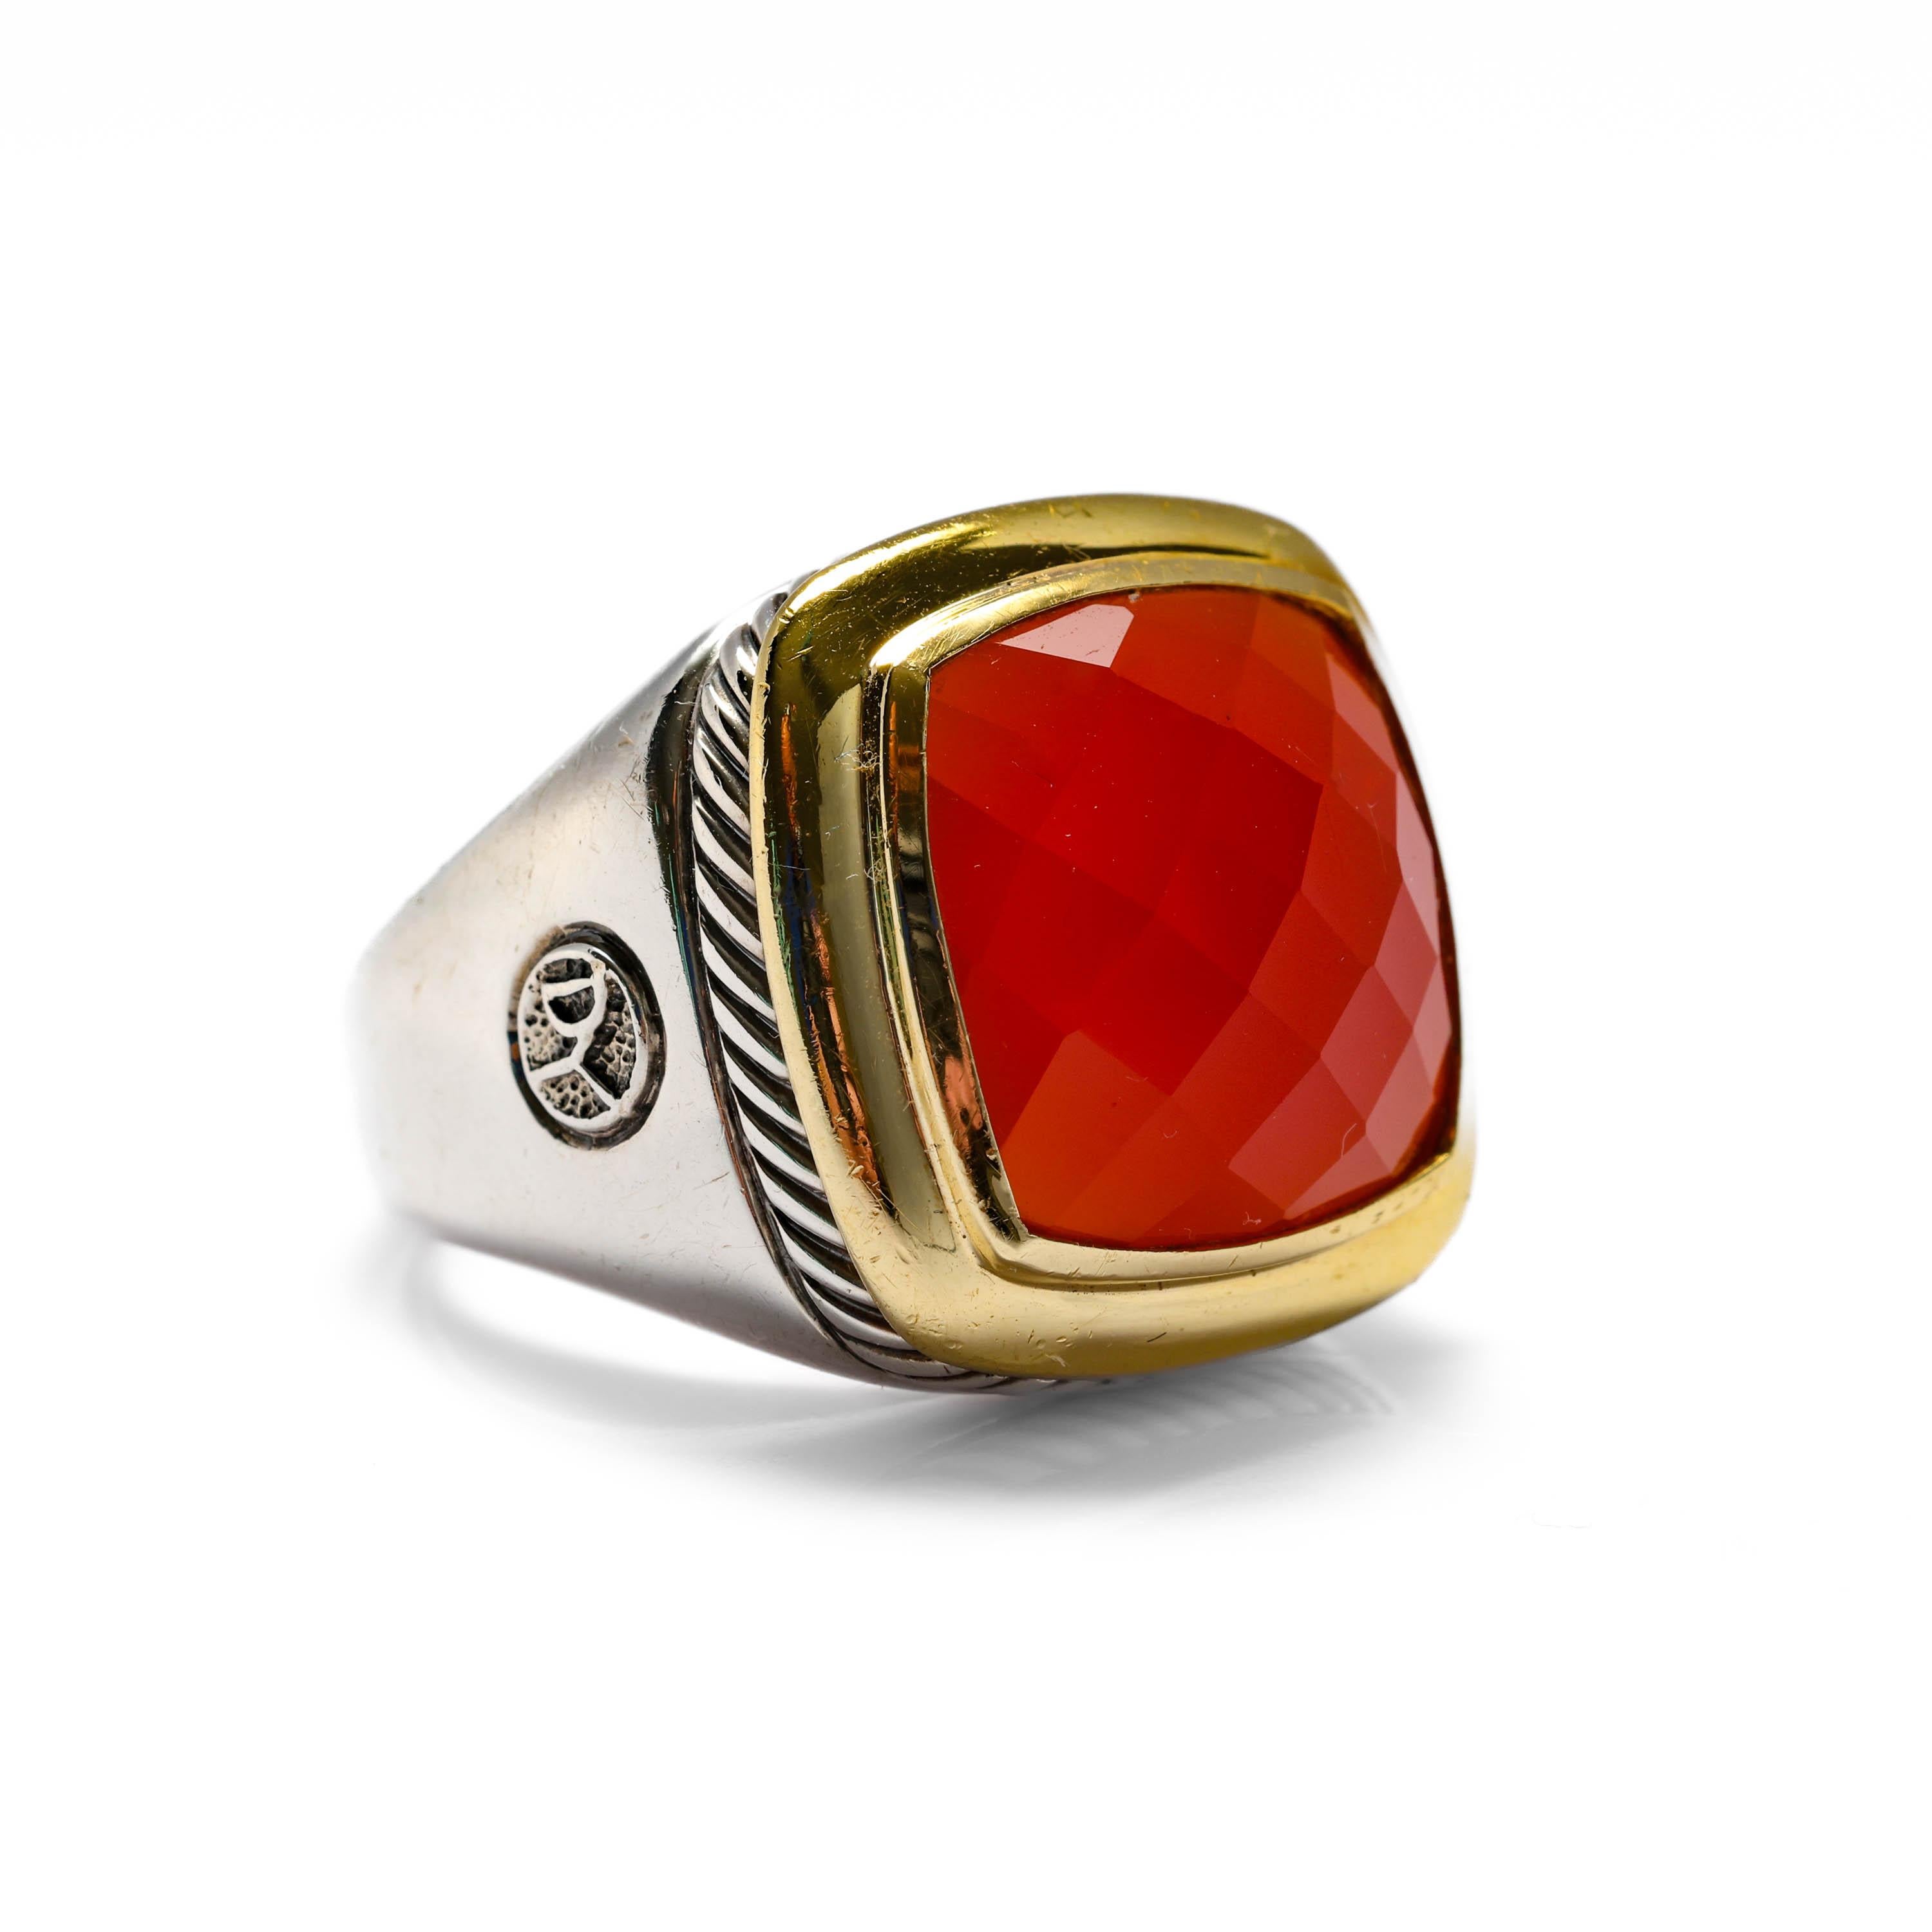 Dies ist ein ikonischer David Yurman-Ring aus Sterlingsilber und 18 Karat Gelbgold aus den 1990er Jahren mit einem facettierten Karneolstein. Der 15 mm große, quadratische Karneolstein ist durchscheinend und leuchtend.

Dieser Vintage-Ring ist in